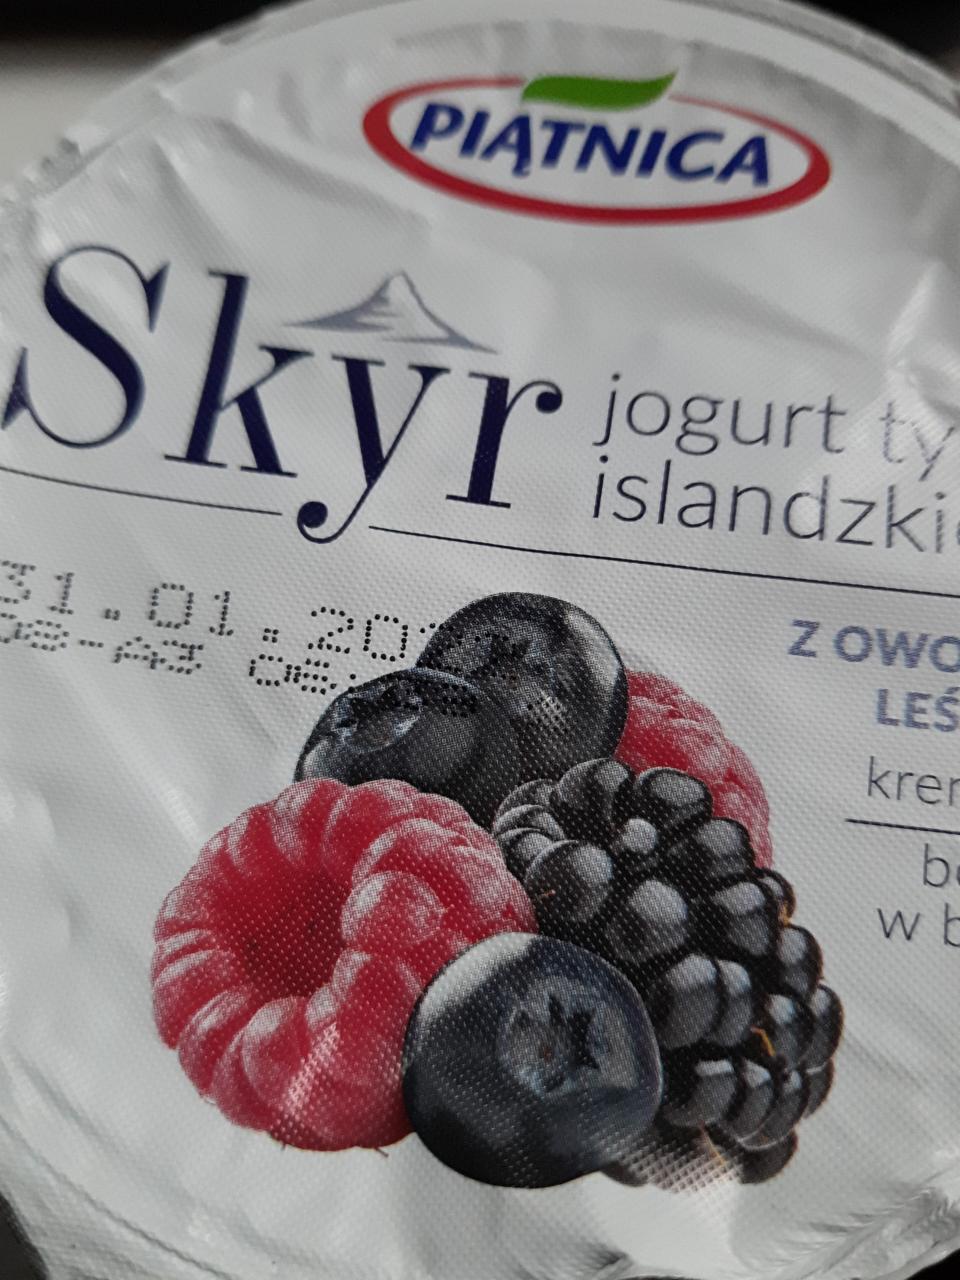 Zdjęcia - Jogurt typu islandzkiego z owocami leśnymi Piątnica